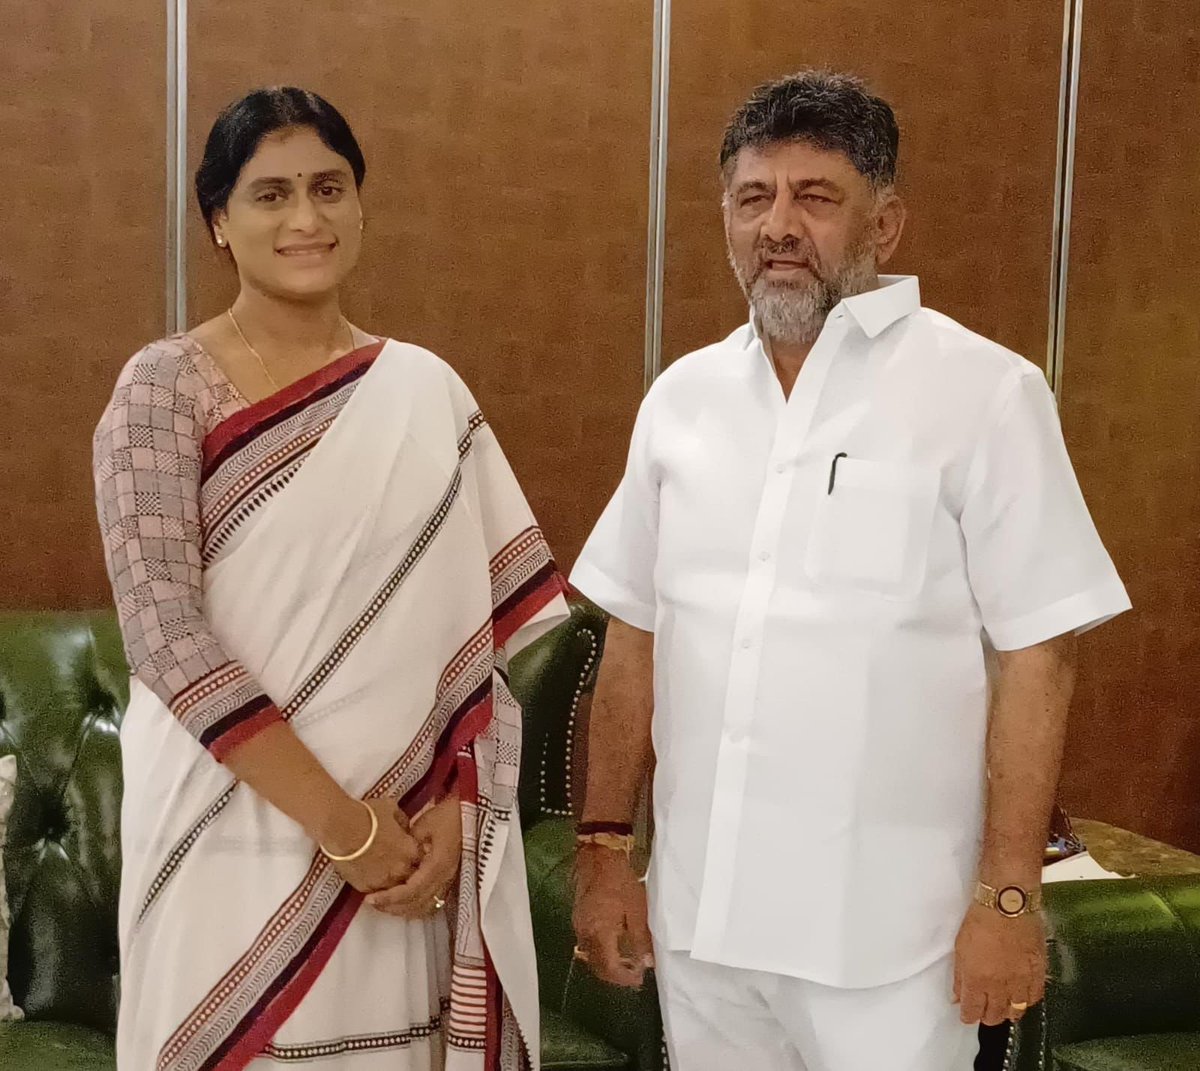 బెంగళూరులో కర్ణాటక డిప్యూటీ సీఎం డీకే శివకుమార్ ని కలిసిన ఏపీ పీసీసీ చీఫ్ షర్మిల

APPC Chief Sharmila met Karnataka Deputy CM DK Shivakumar in Bengaluru

@DKShivakumar 
@realyssharmila